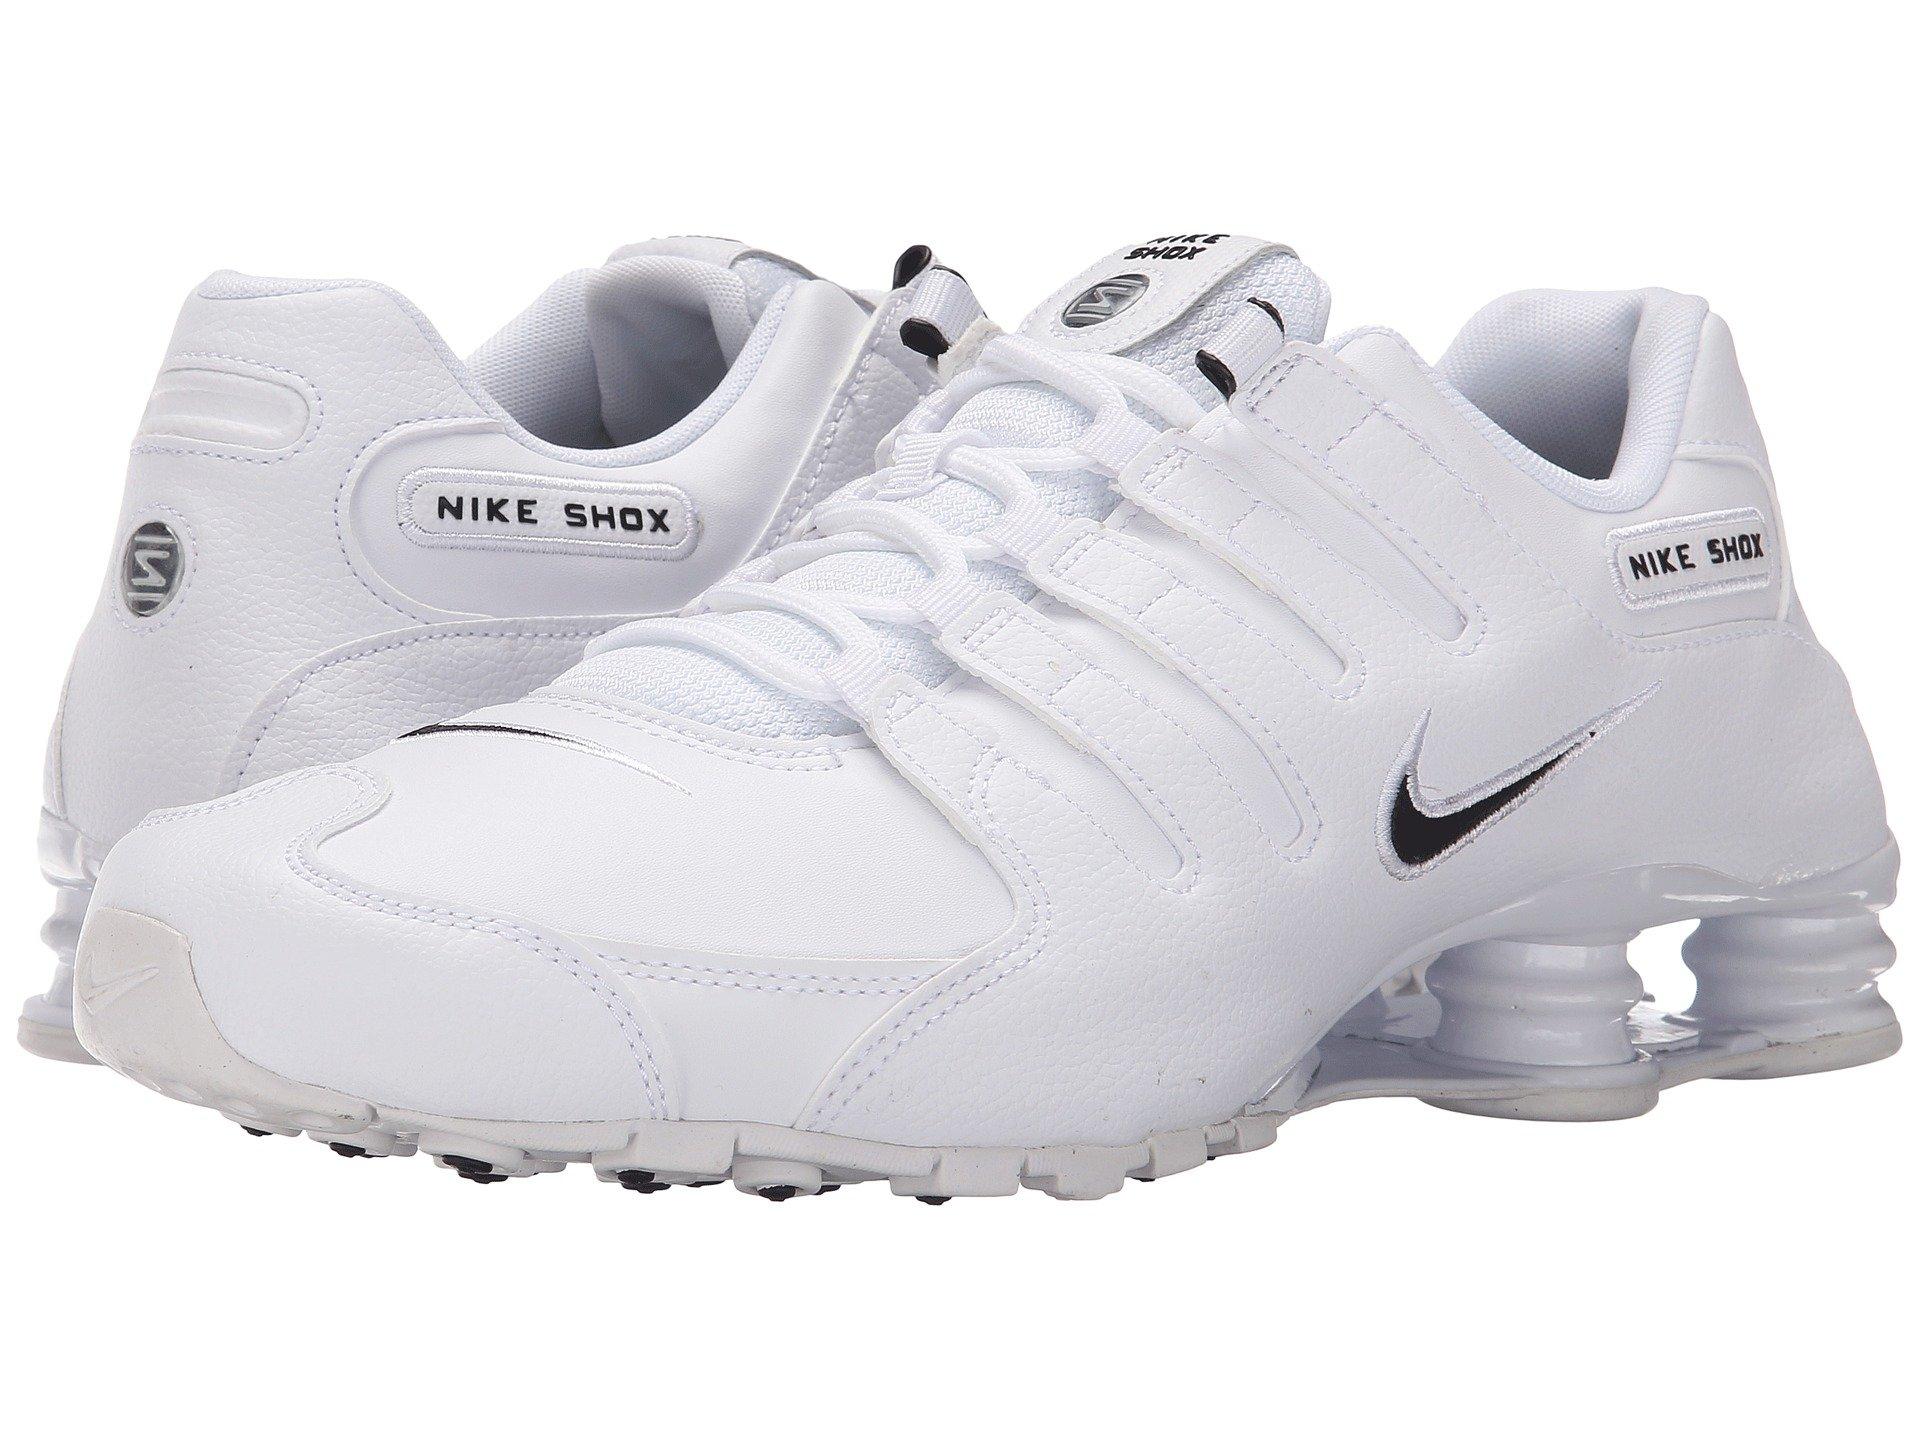 Nike Shox Nz Eu (white/black/triple White) Men's Running Shoes for Men -  Lyst